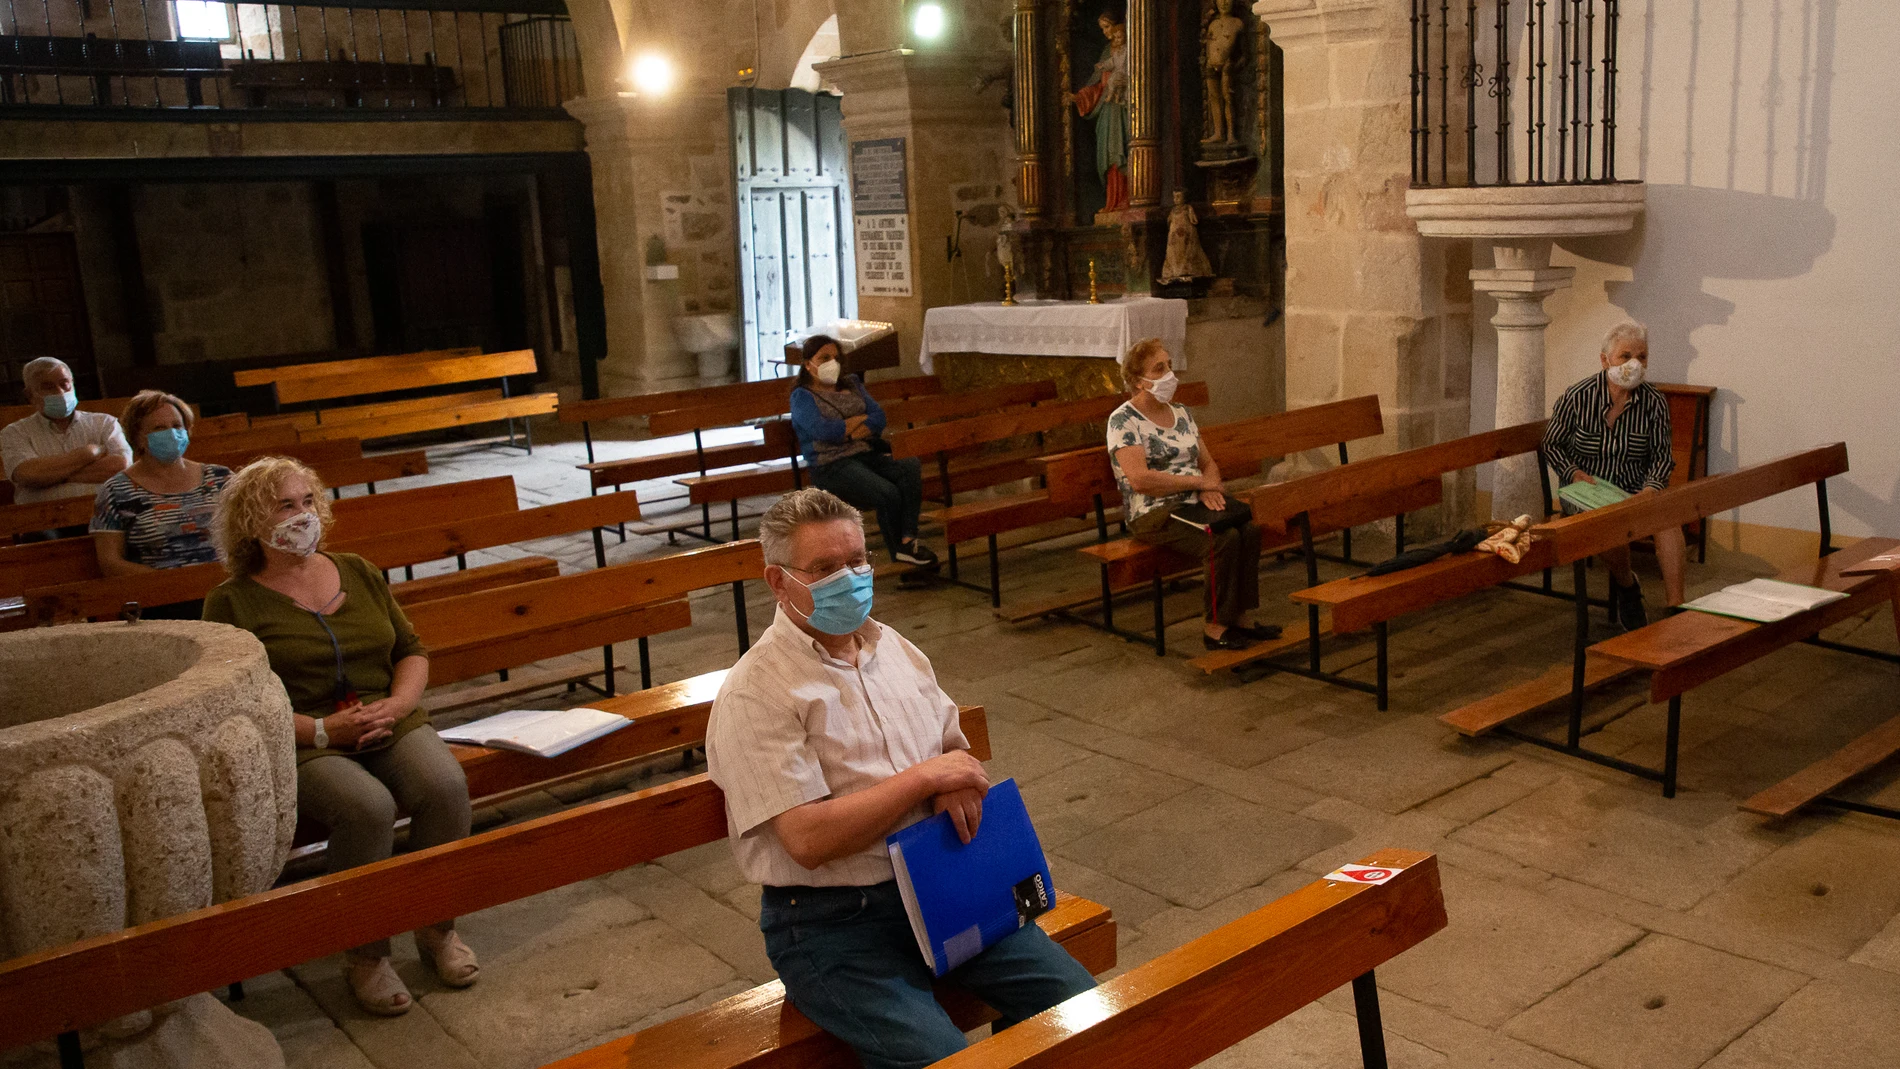 Reanudación del culto en la iglesia de Tardobispo en Zamora